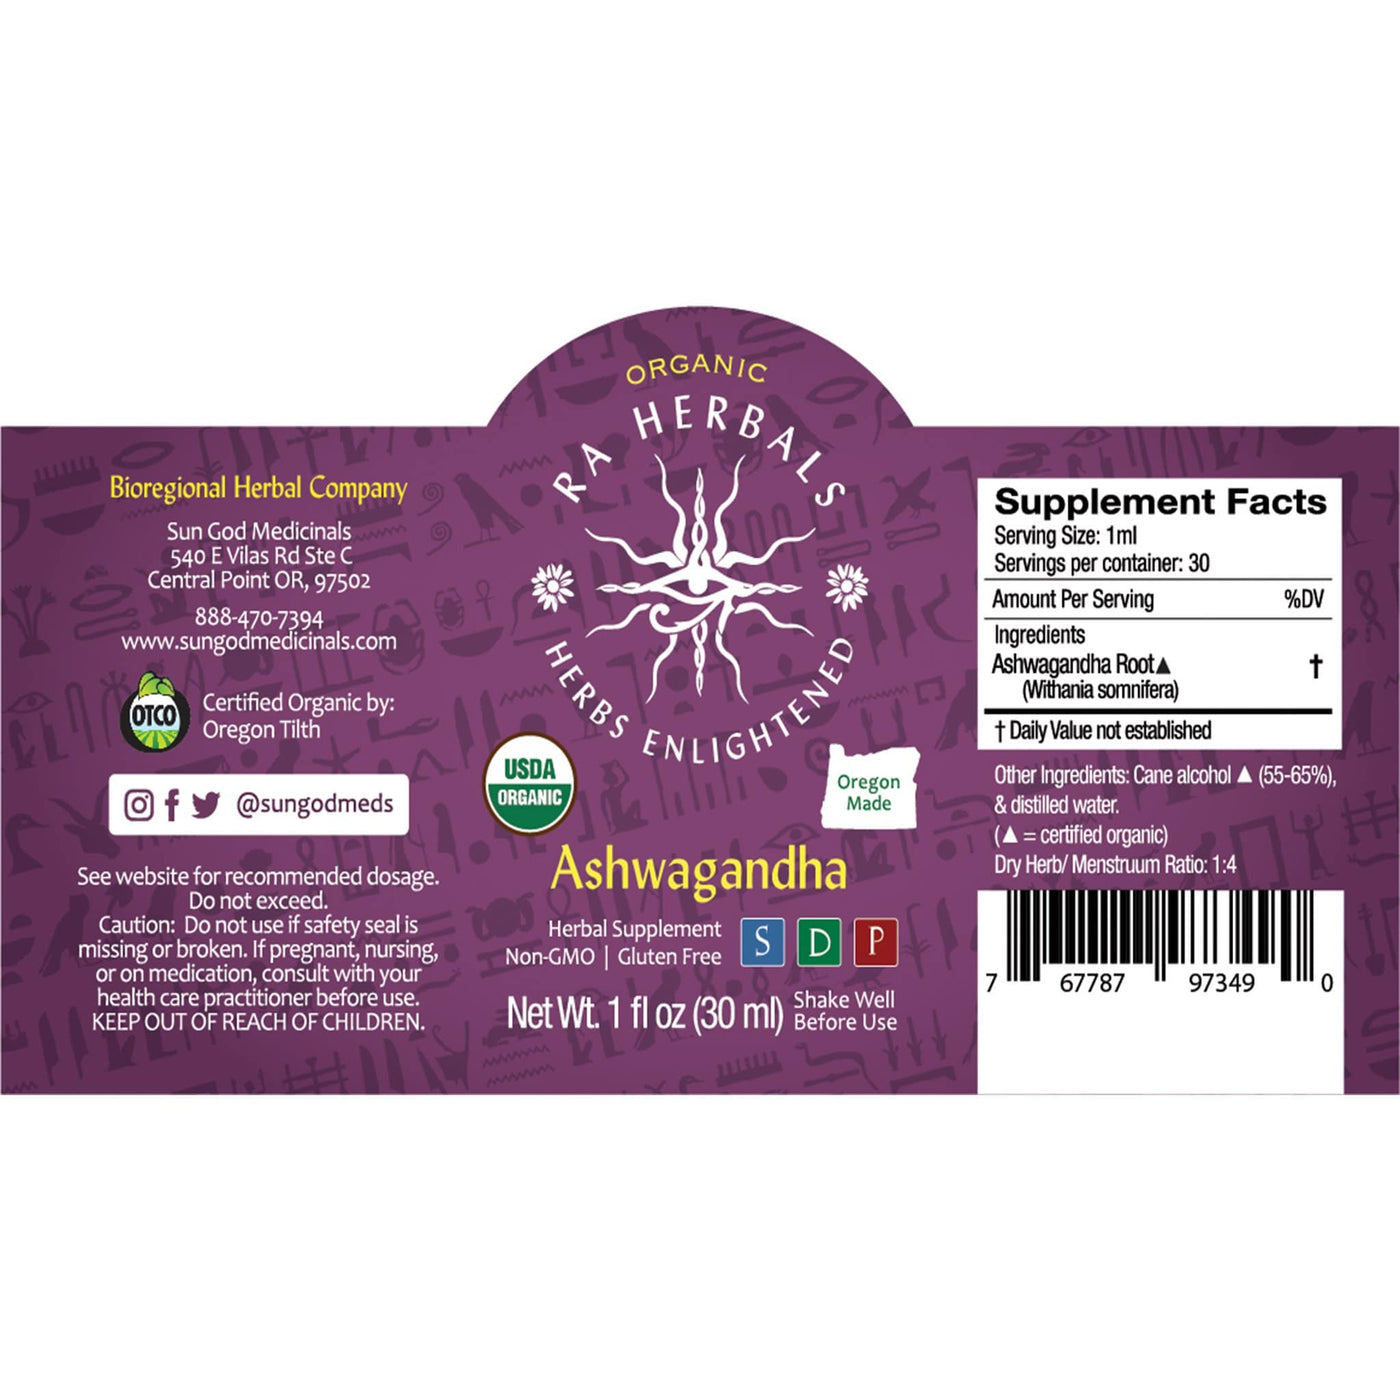 Ra Herbals Certified Organic Ashwagandha Tincture - Sun God Medicinals